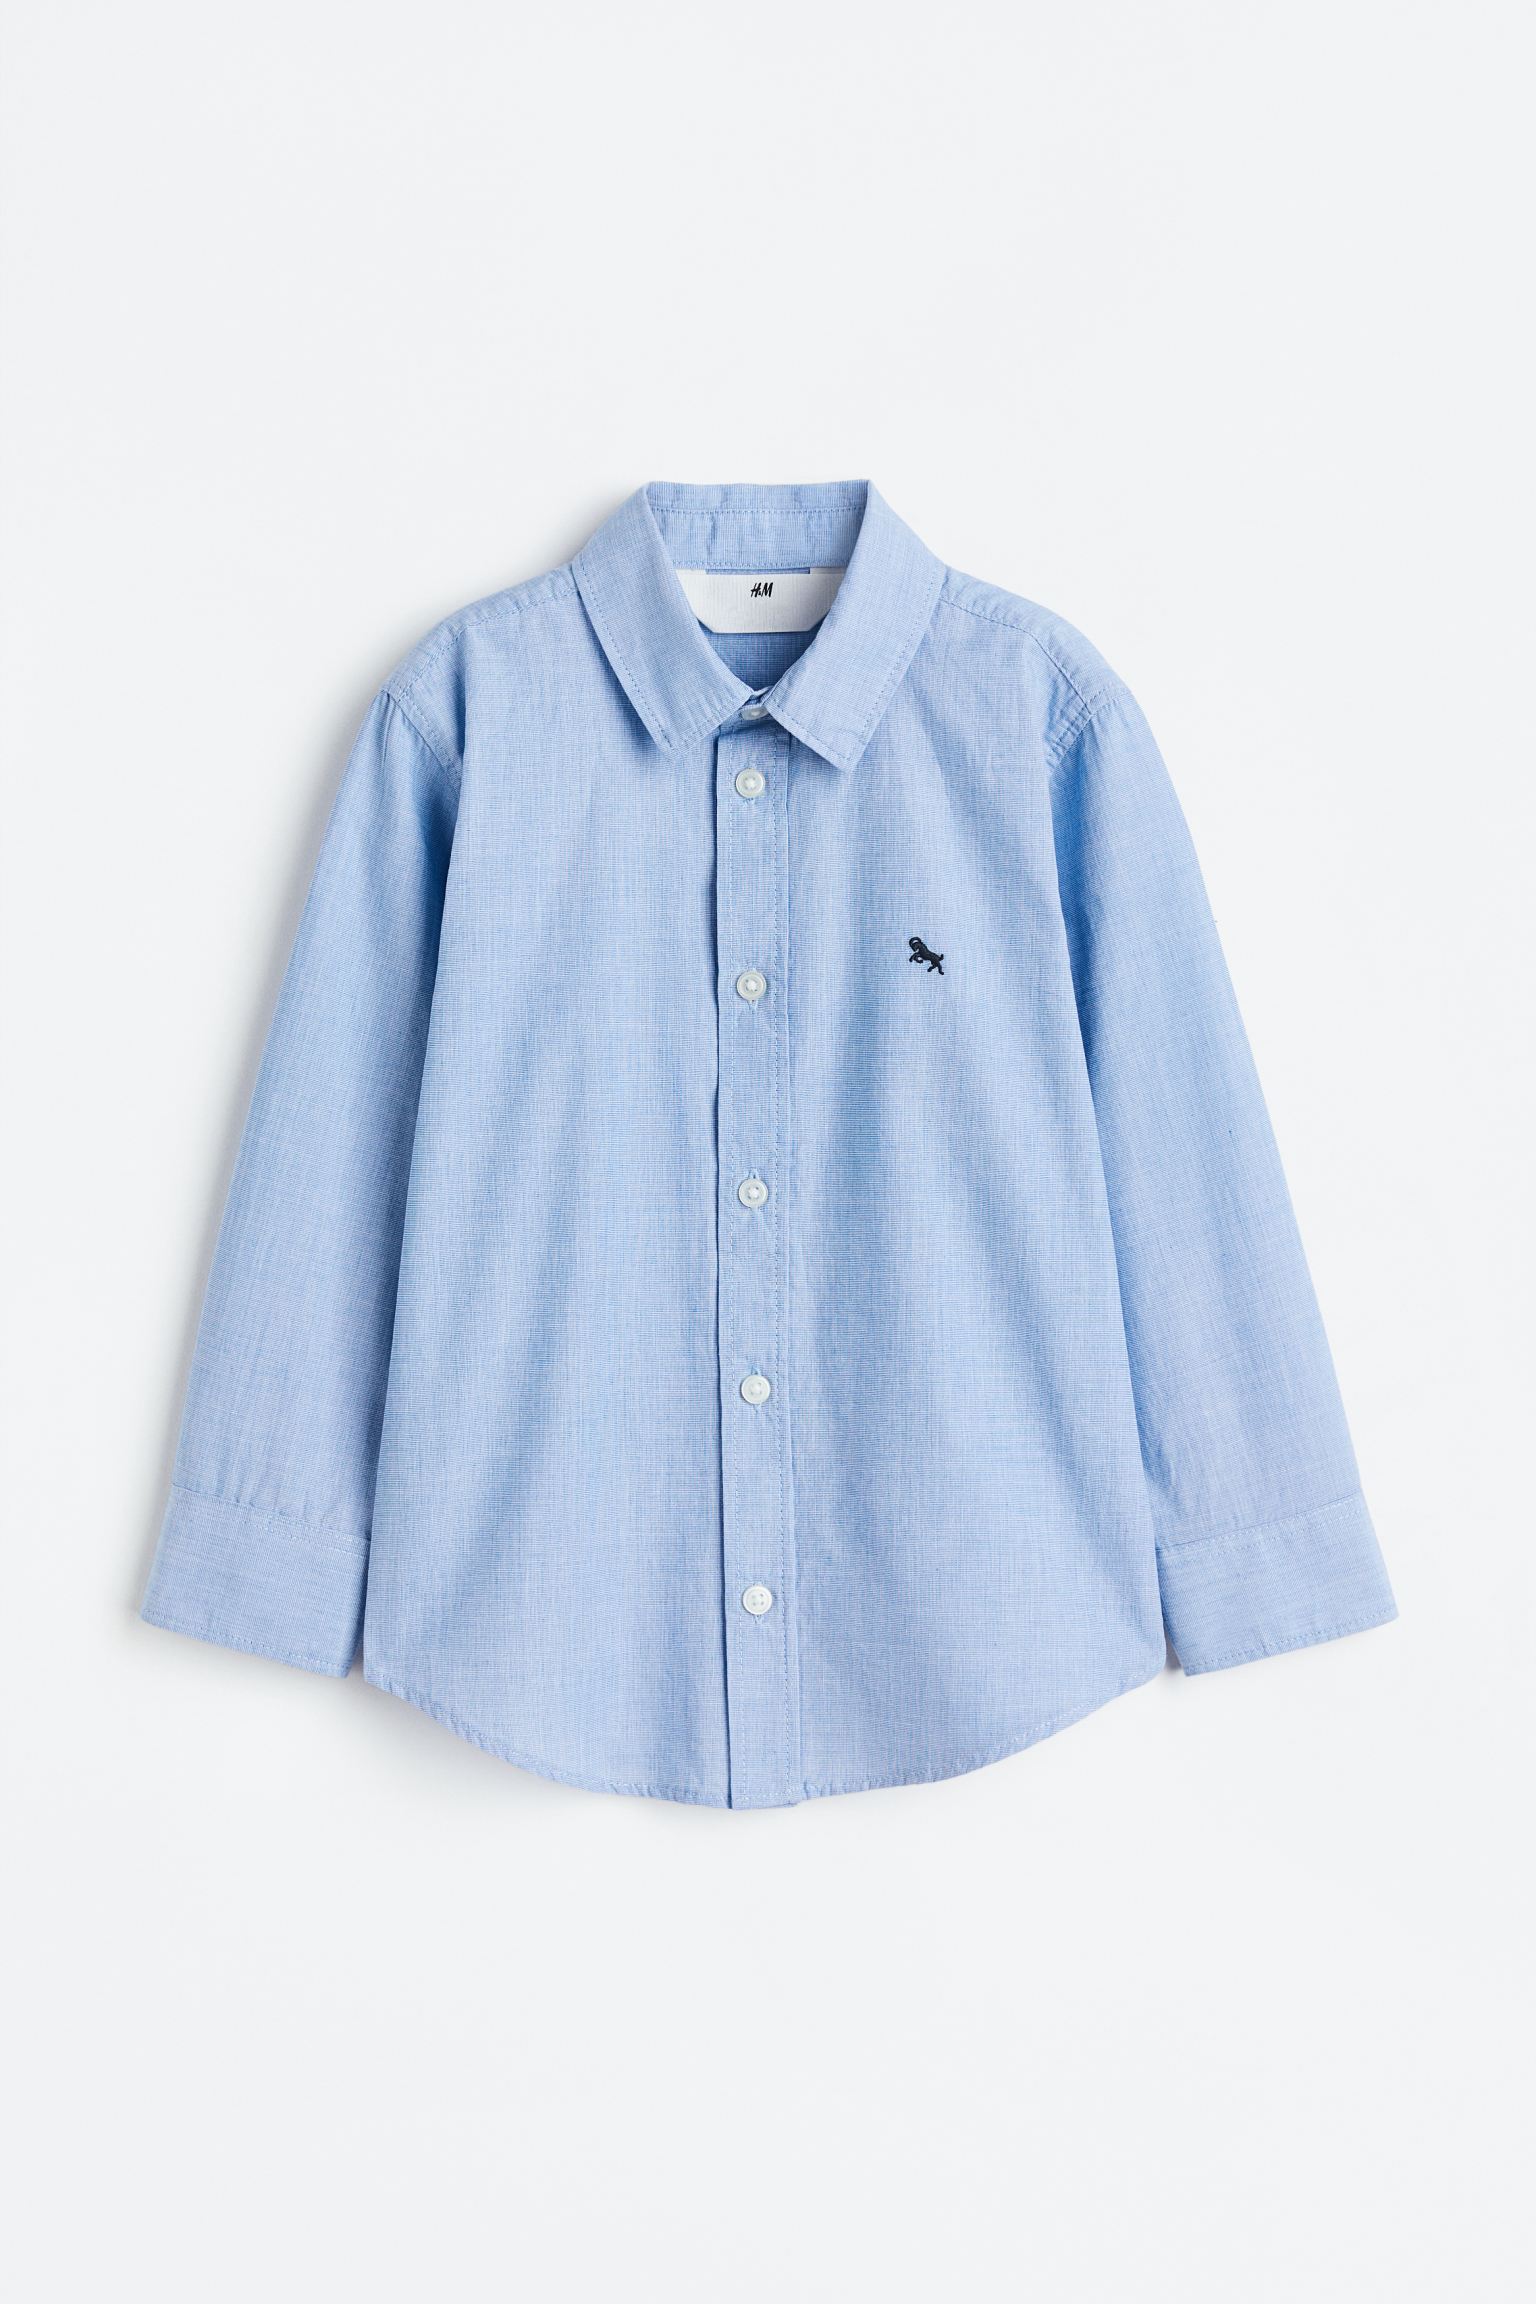 Хлопчатобумажная рубашка H&M, светло-синий рубашка h